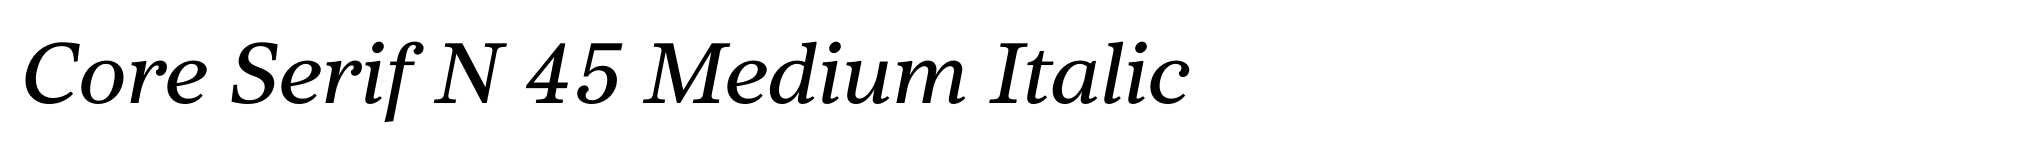 Bild Core Serif N 45 Medium Italic